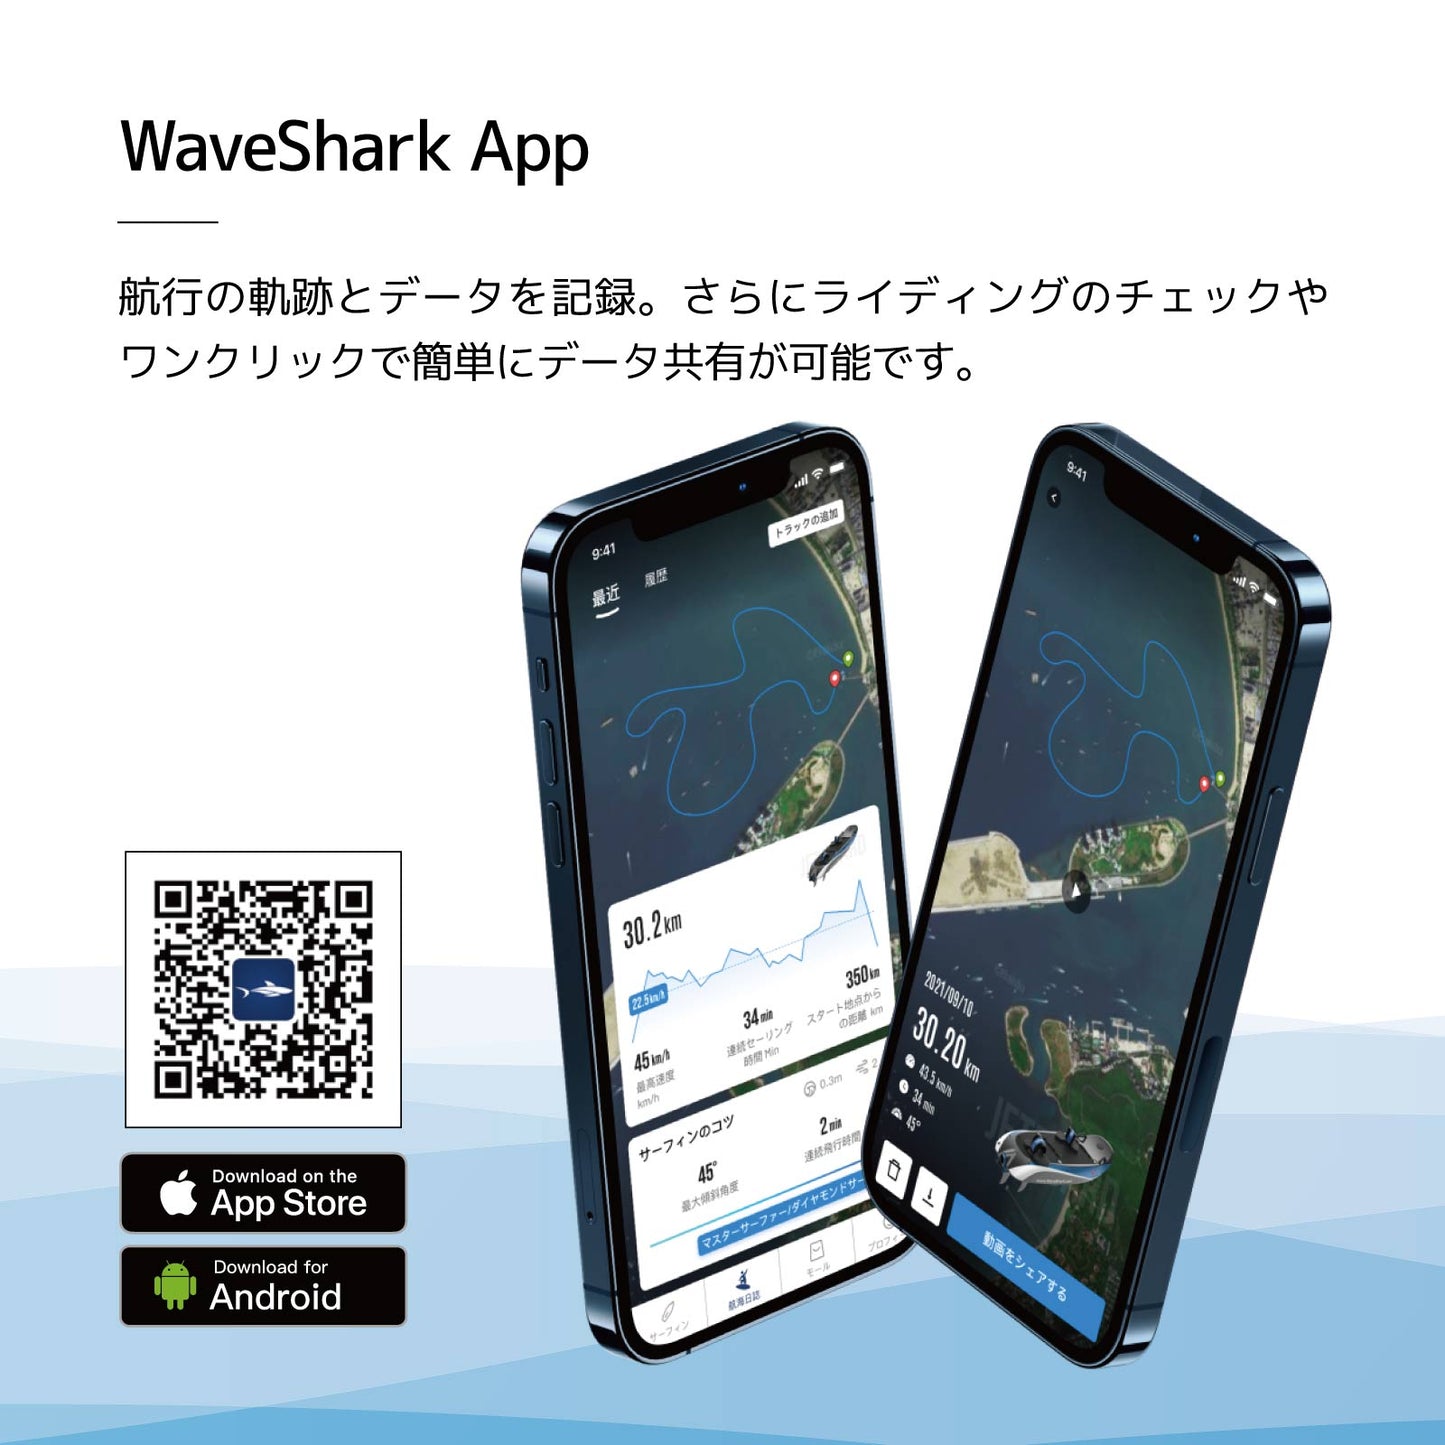 電動フォイルサーフィン WaveShark Foil 2 Explorer